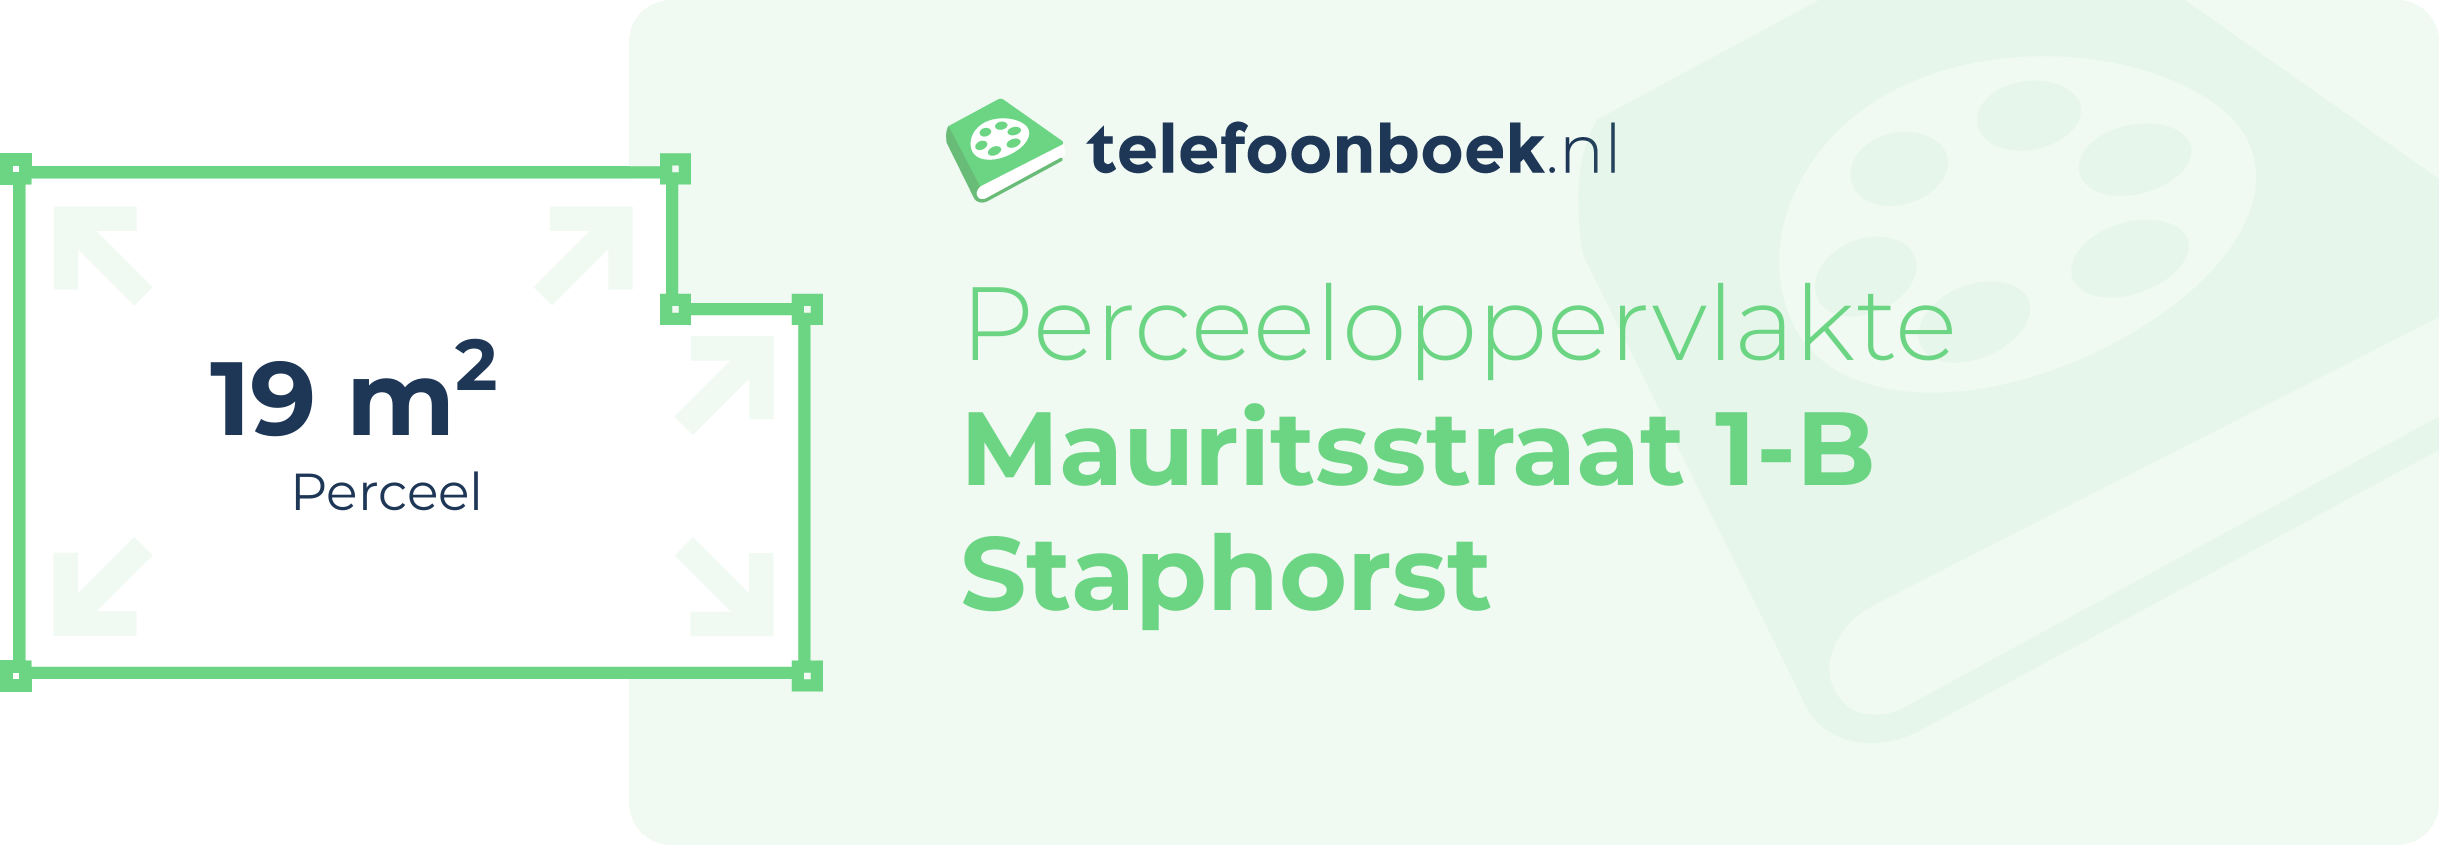 Perceeloppervlakte Mauritsstraat 1-B Staphorst